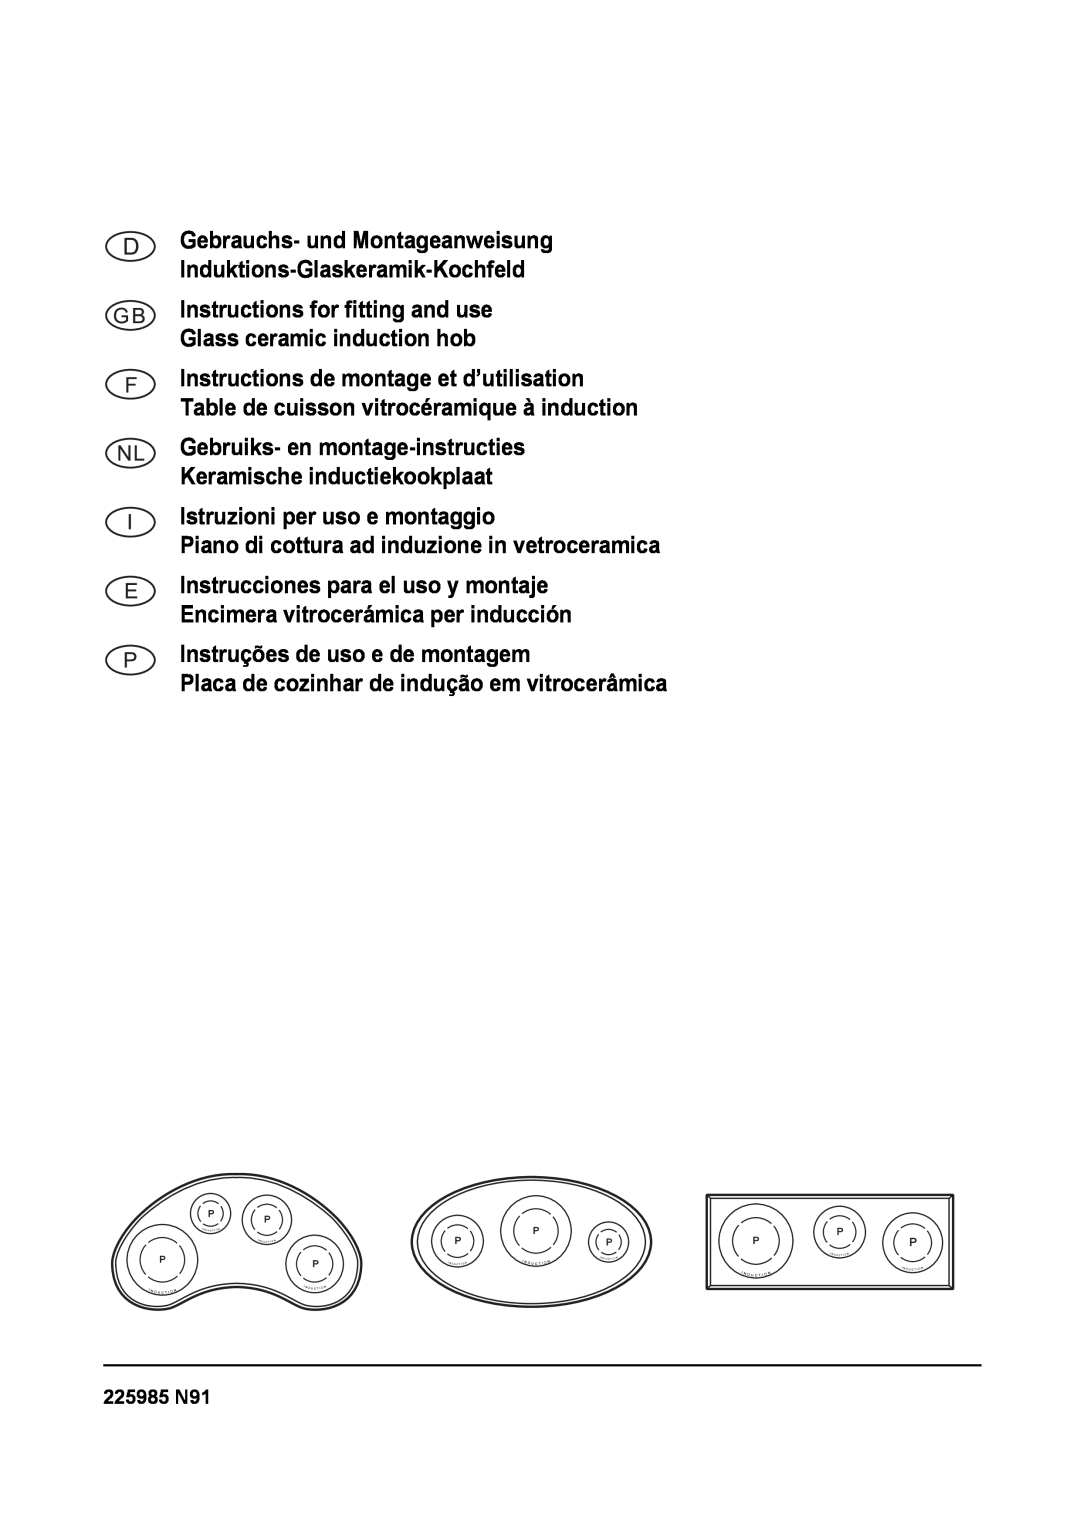 Smeg SE2931ID manual Istruzioni per uso e montaggio, Piano di cottura ad induzione in vetroceramica, 225985 N91 